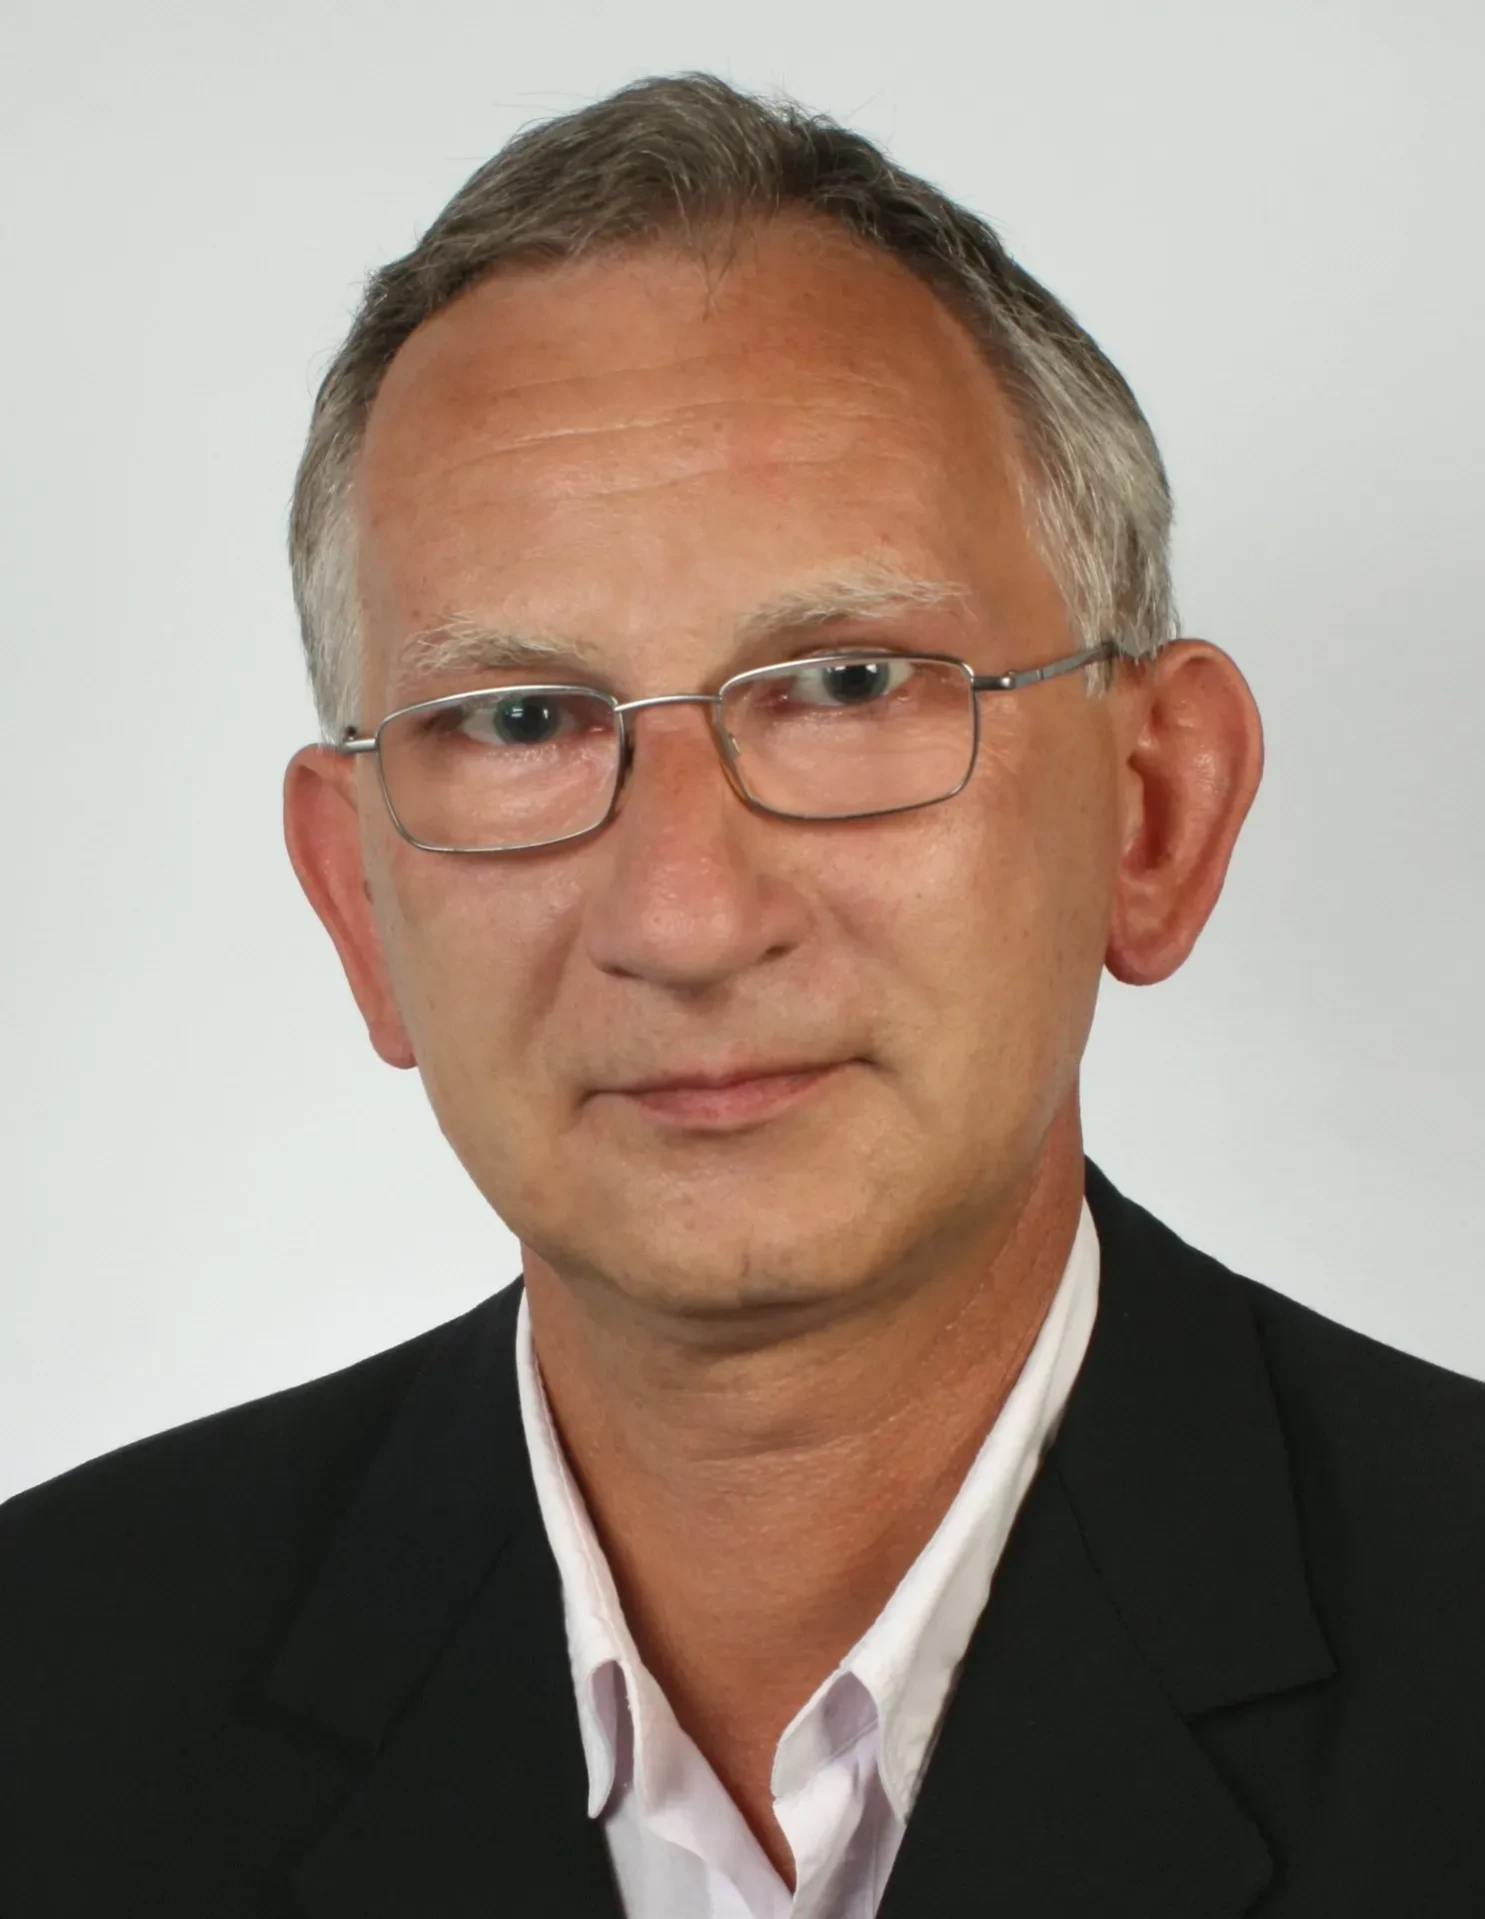 Maciej Wiktor Wiechowski